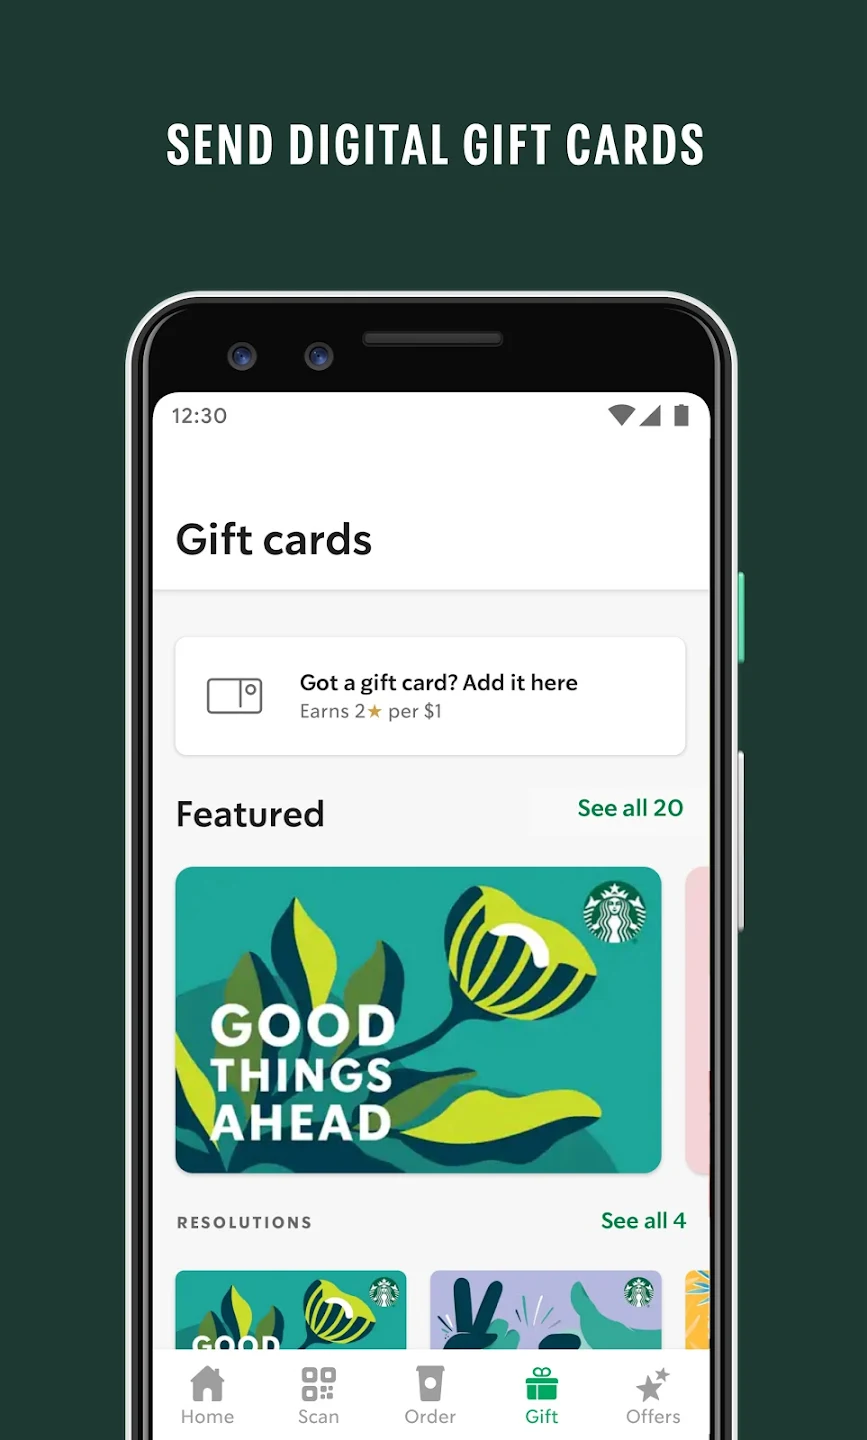  Starbucks $20 Gift Cards (5-Pack) : Gift Cards